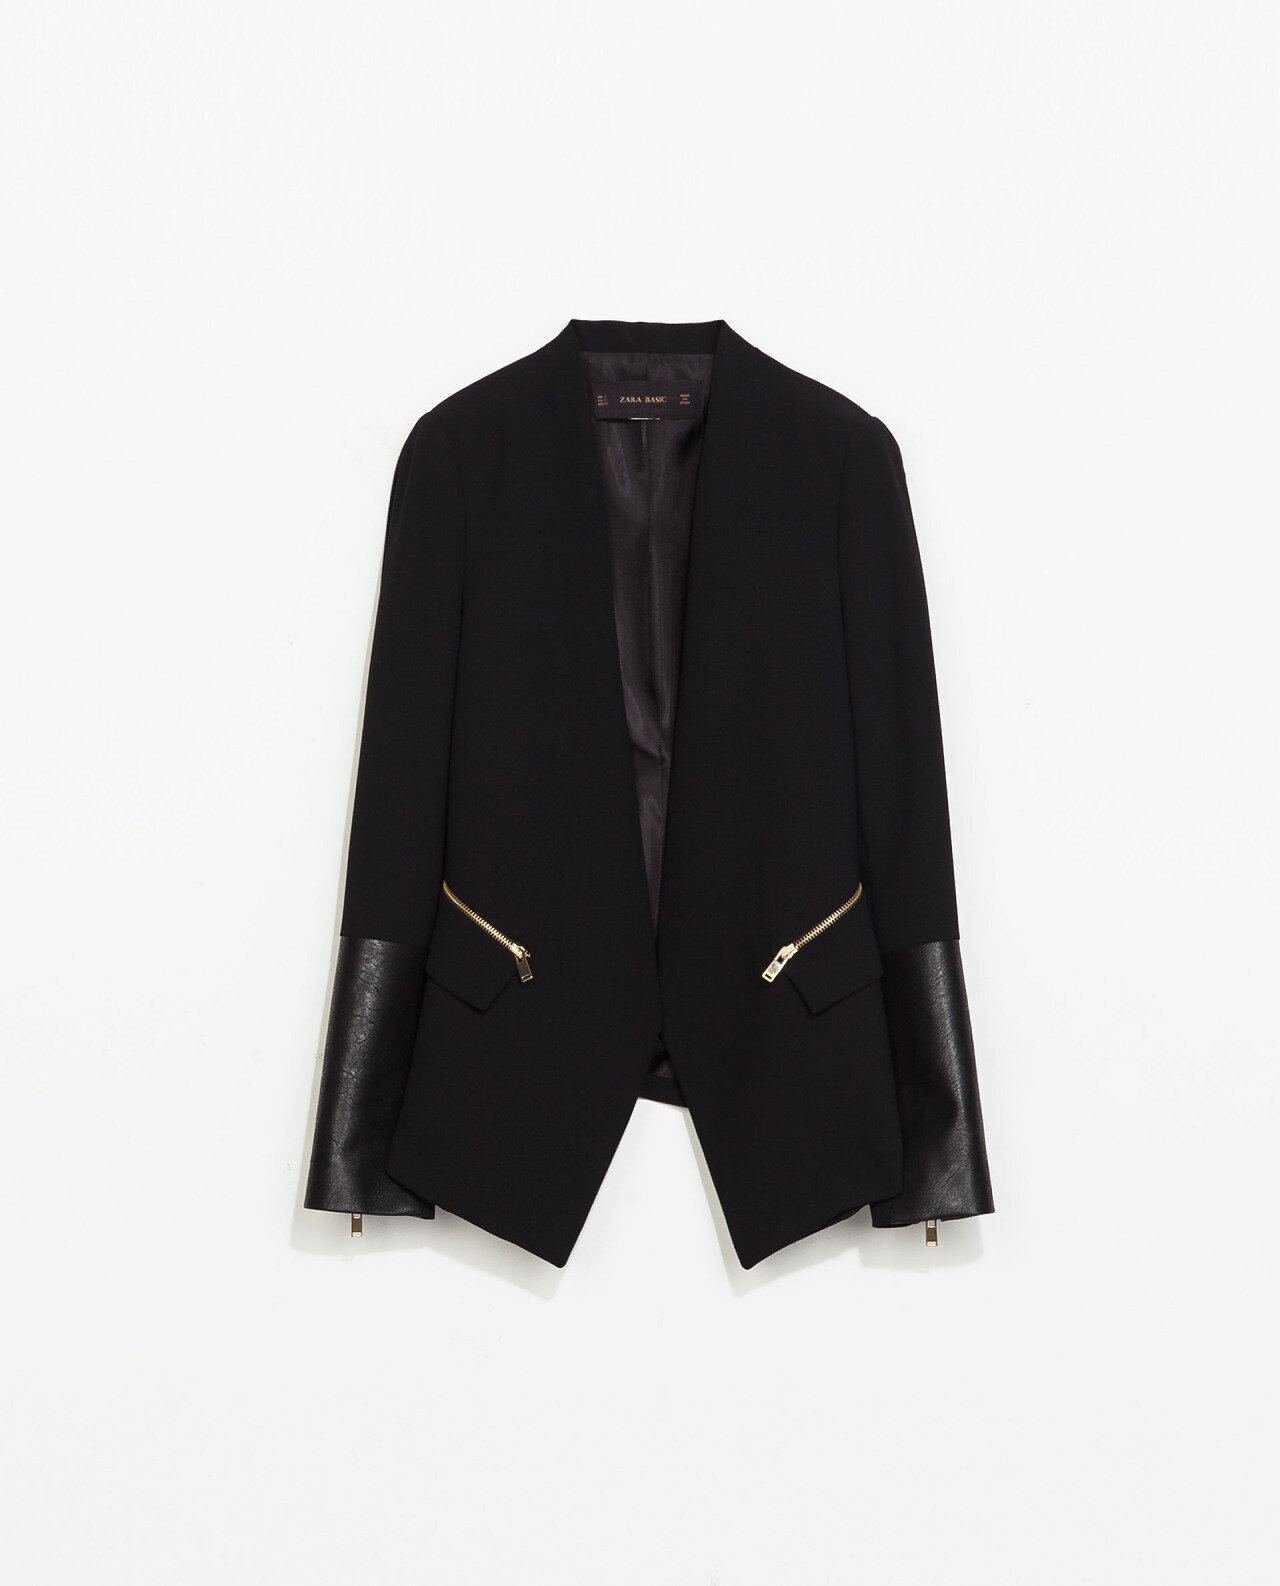 Zara Combined Faux Leather Blazer in Black.jpg